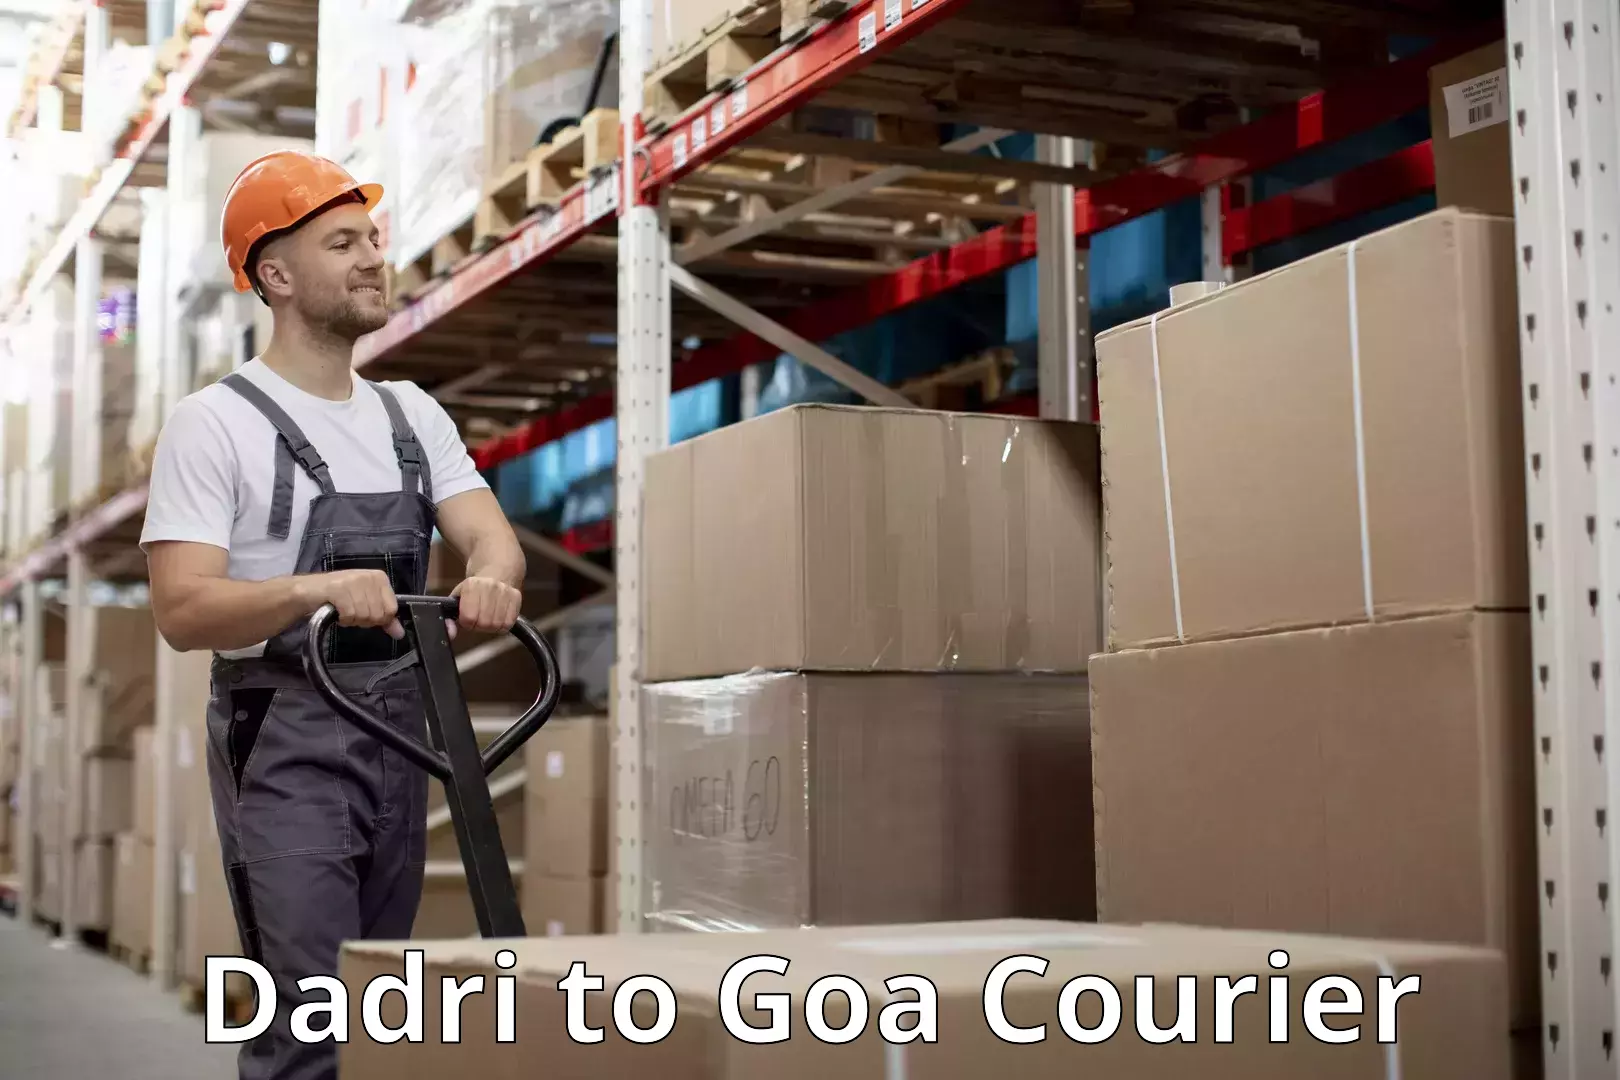 Luggage delivery app Dadri to Goa